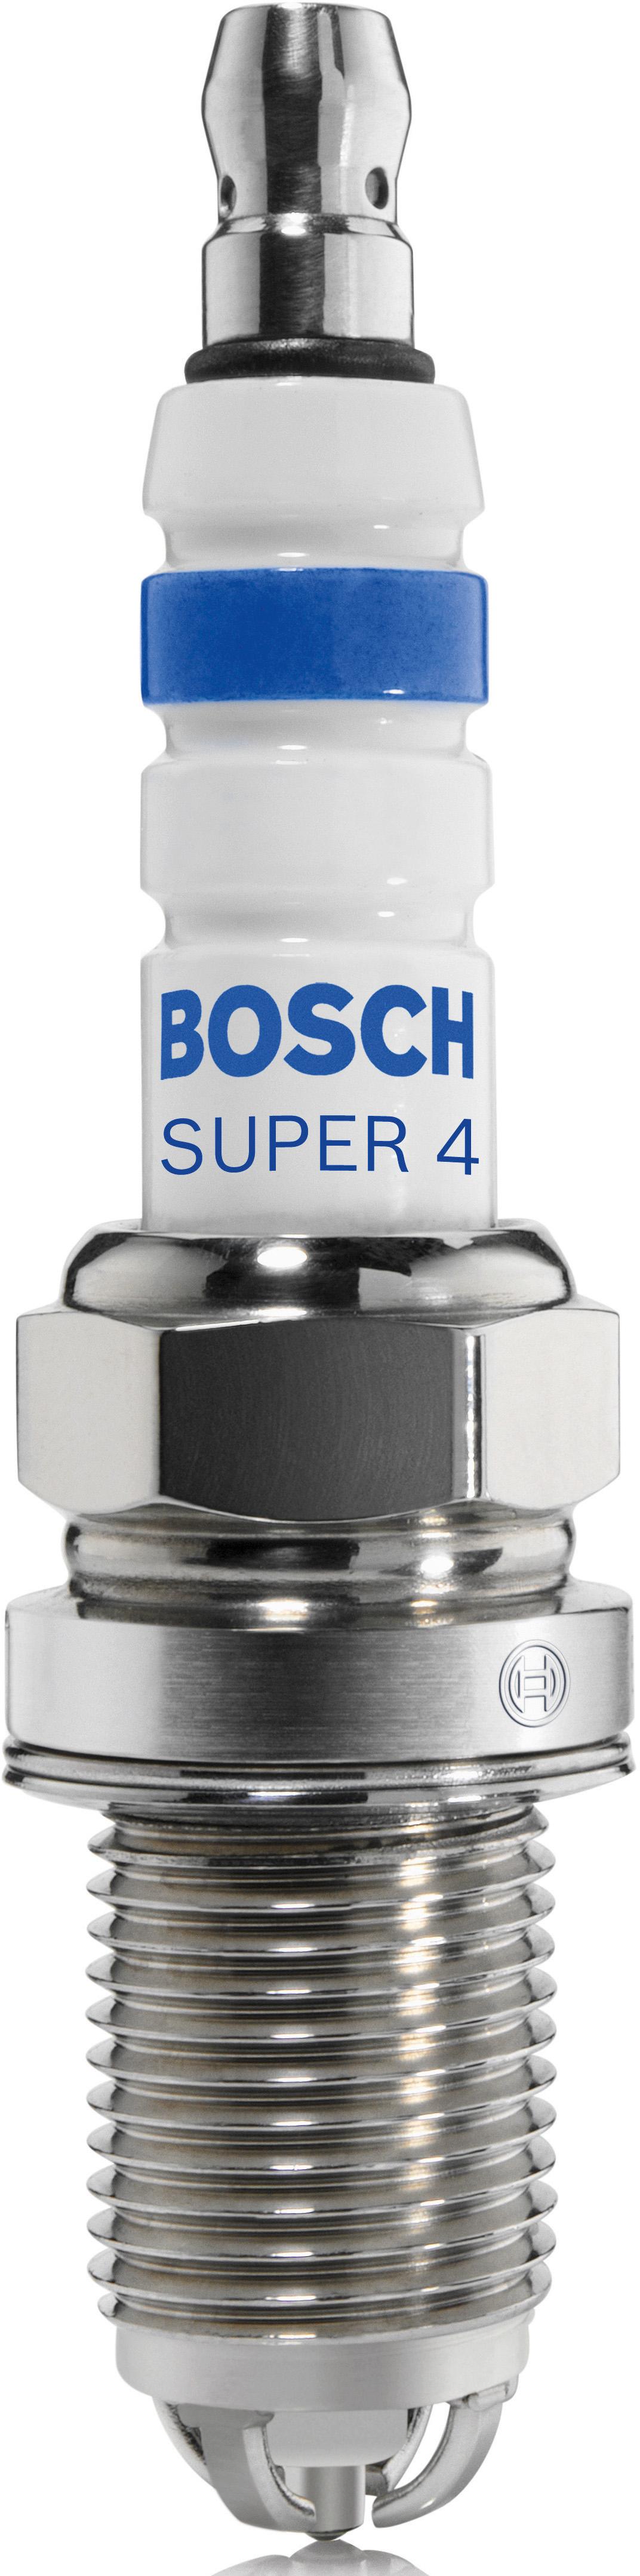 Fr78X Bosch Super 4 Spark Plug X4